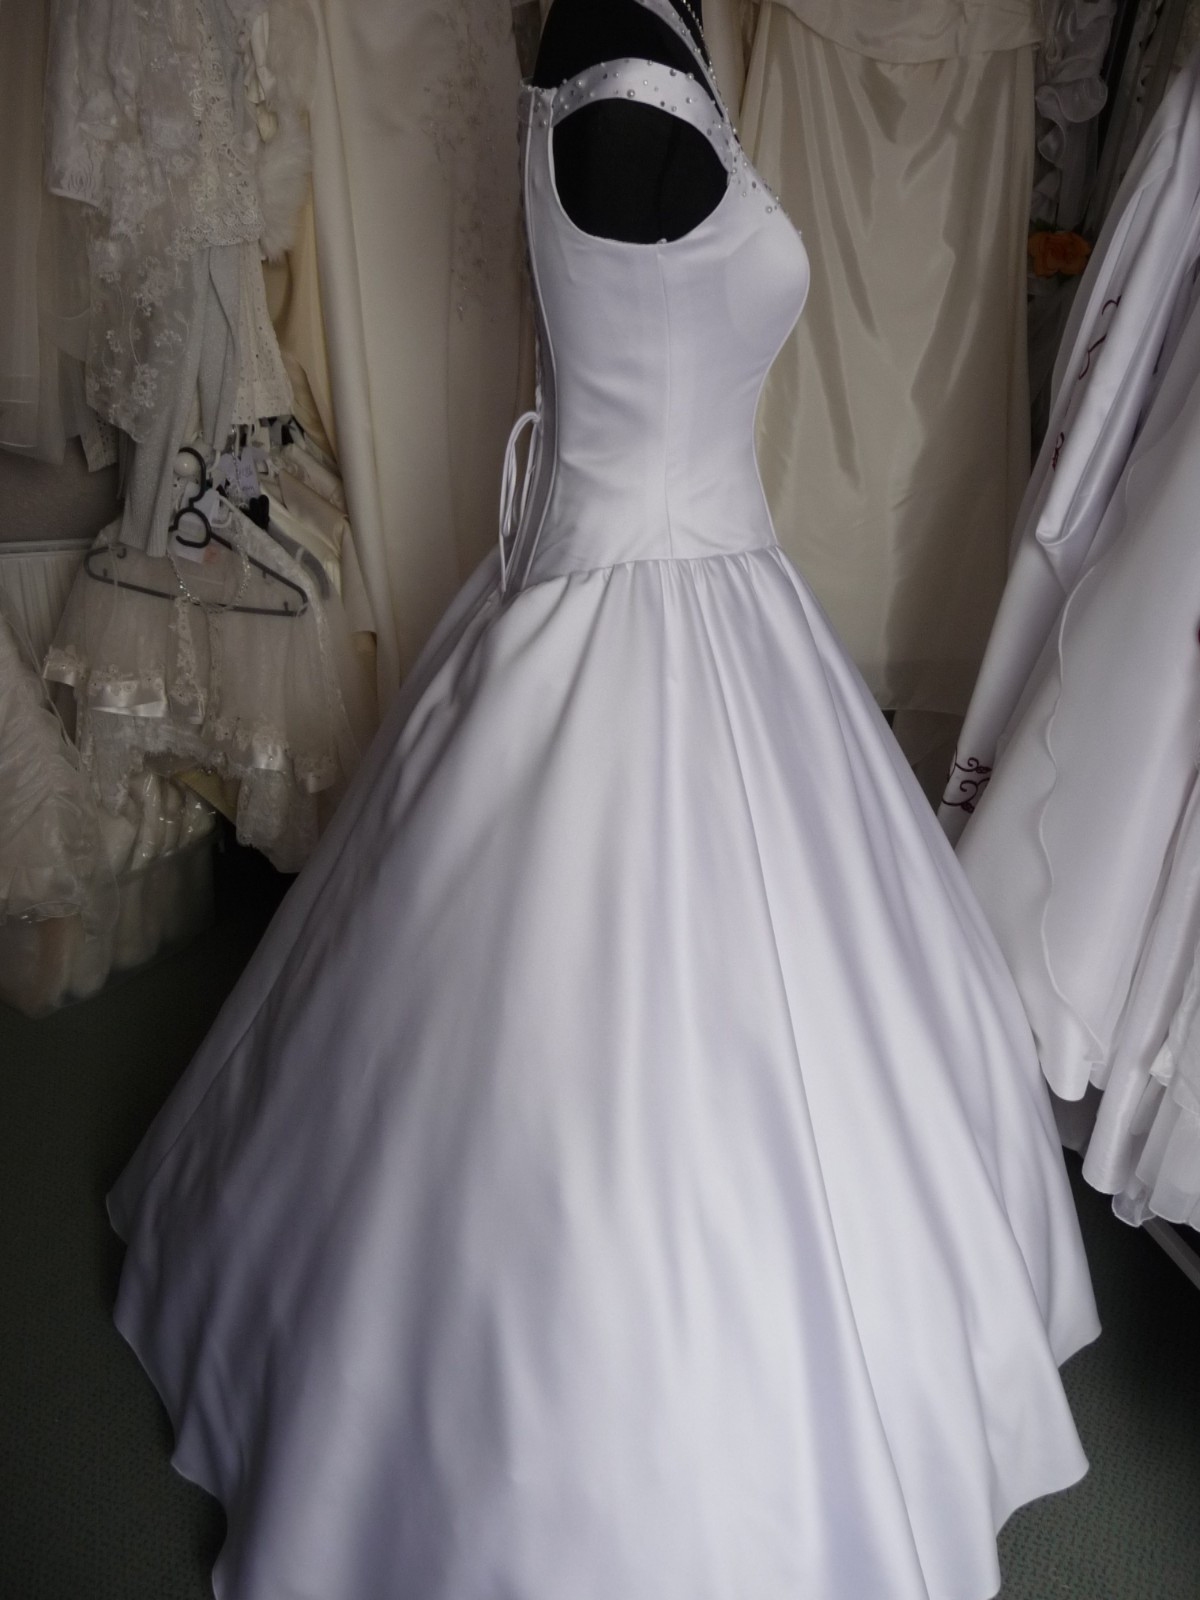 Hochzeitskleid Neckholder
 Brautkleid Hochzeitskleid Neckholder 36 40 weiß wie neu